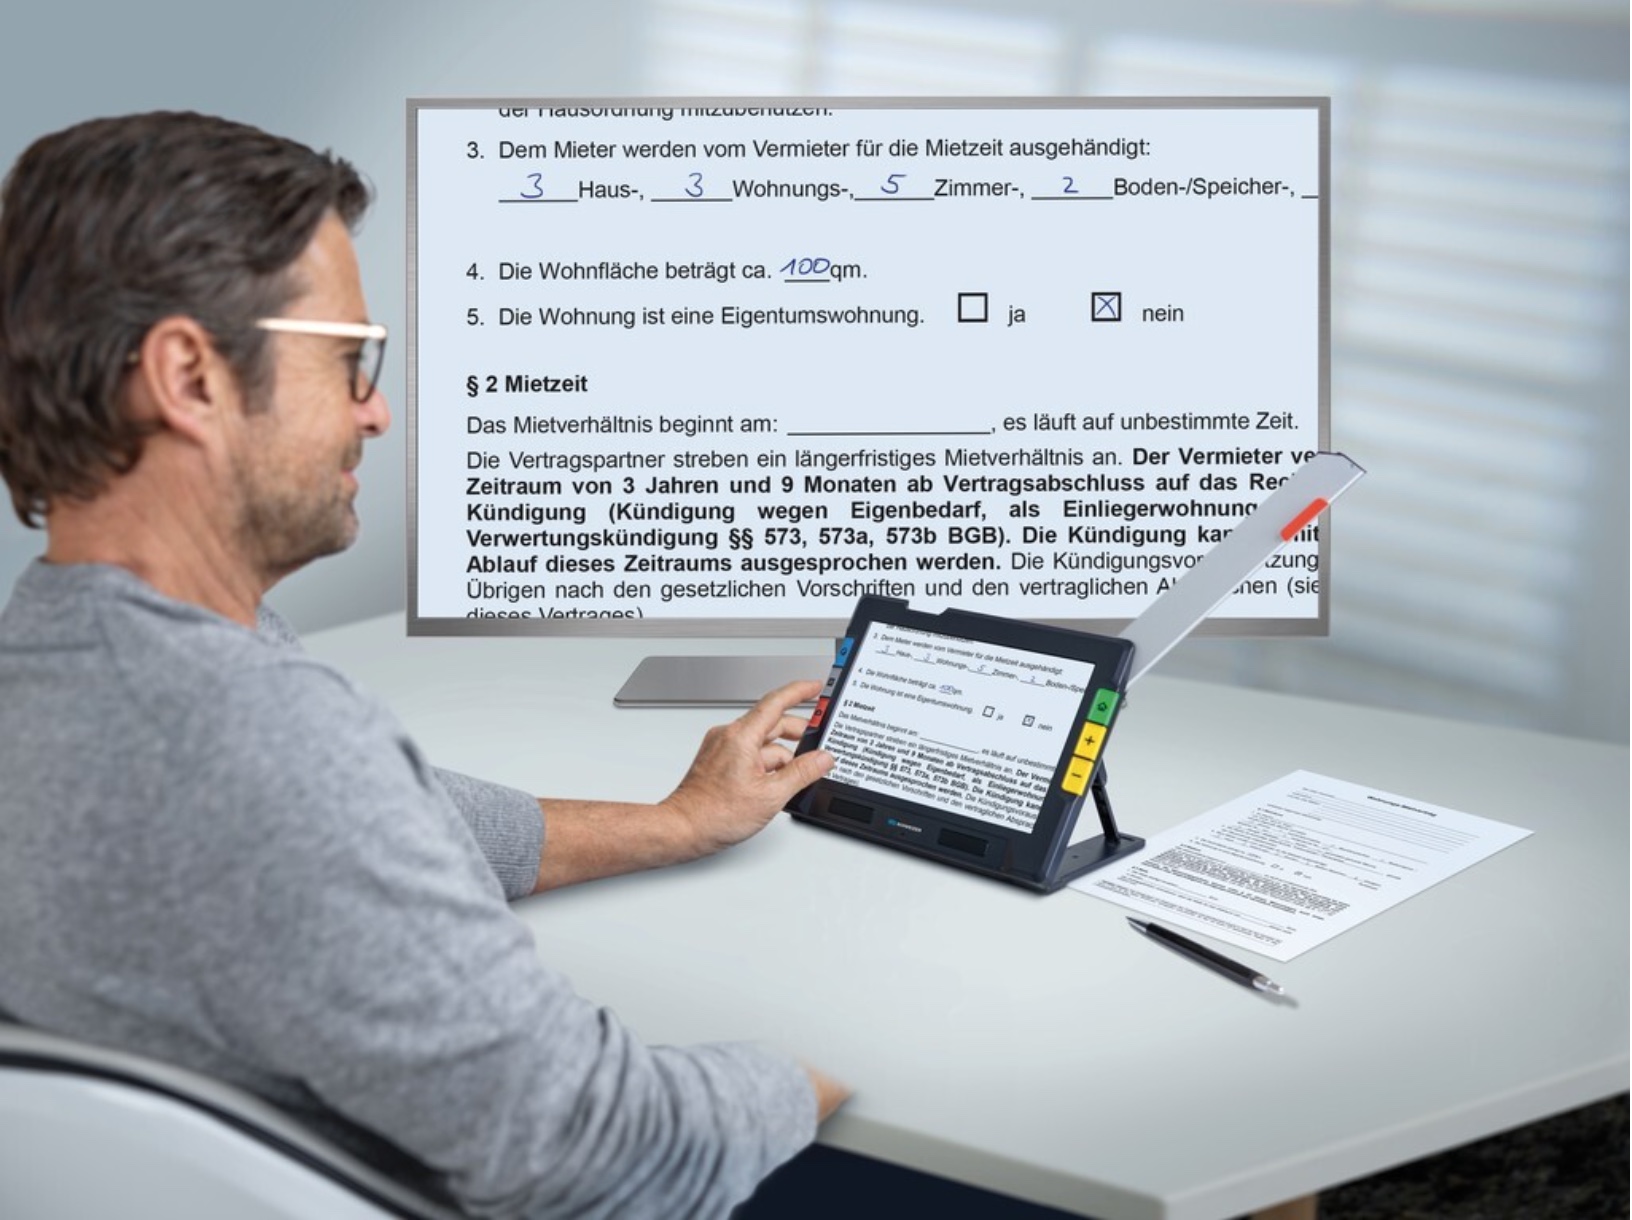 Schweizer eMag 100 HD - elektronische Lupe in Tablet-Größe